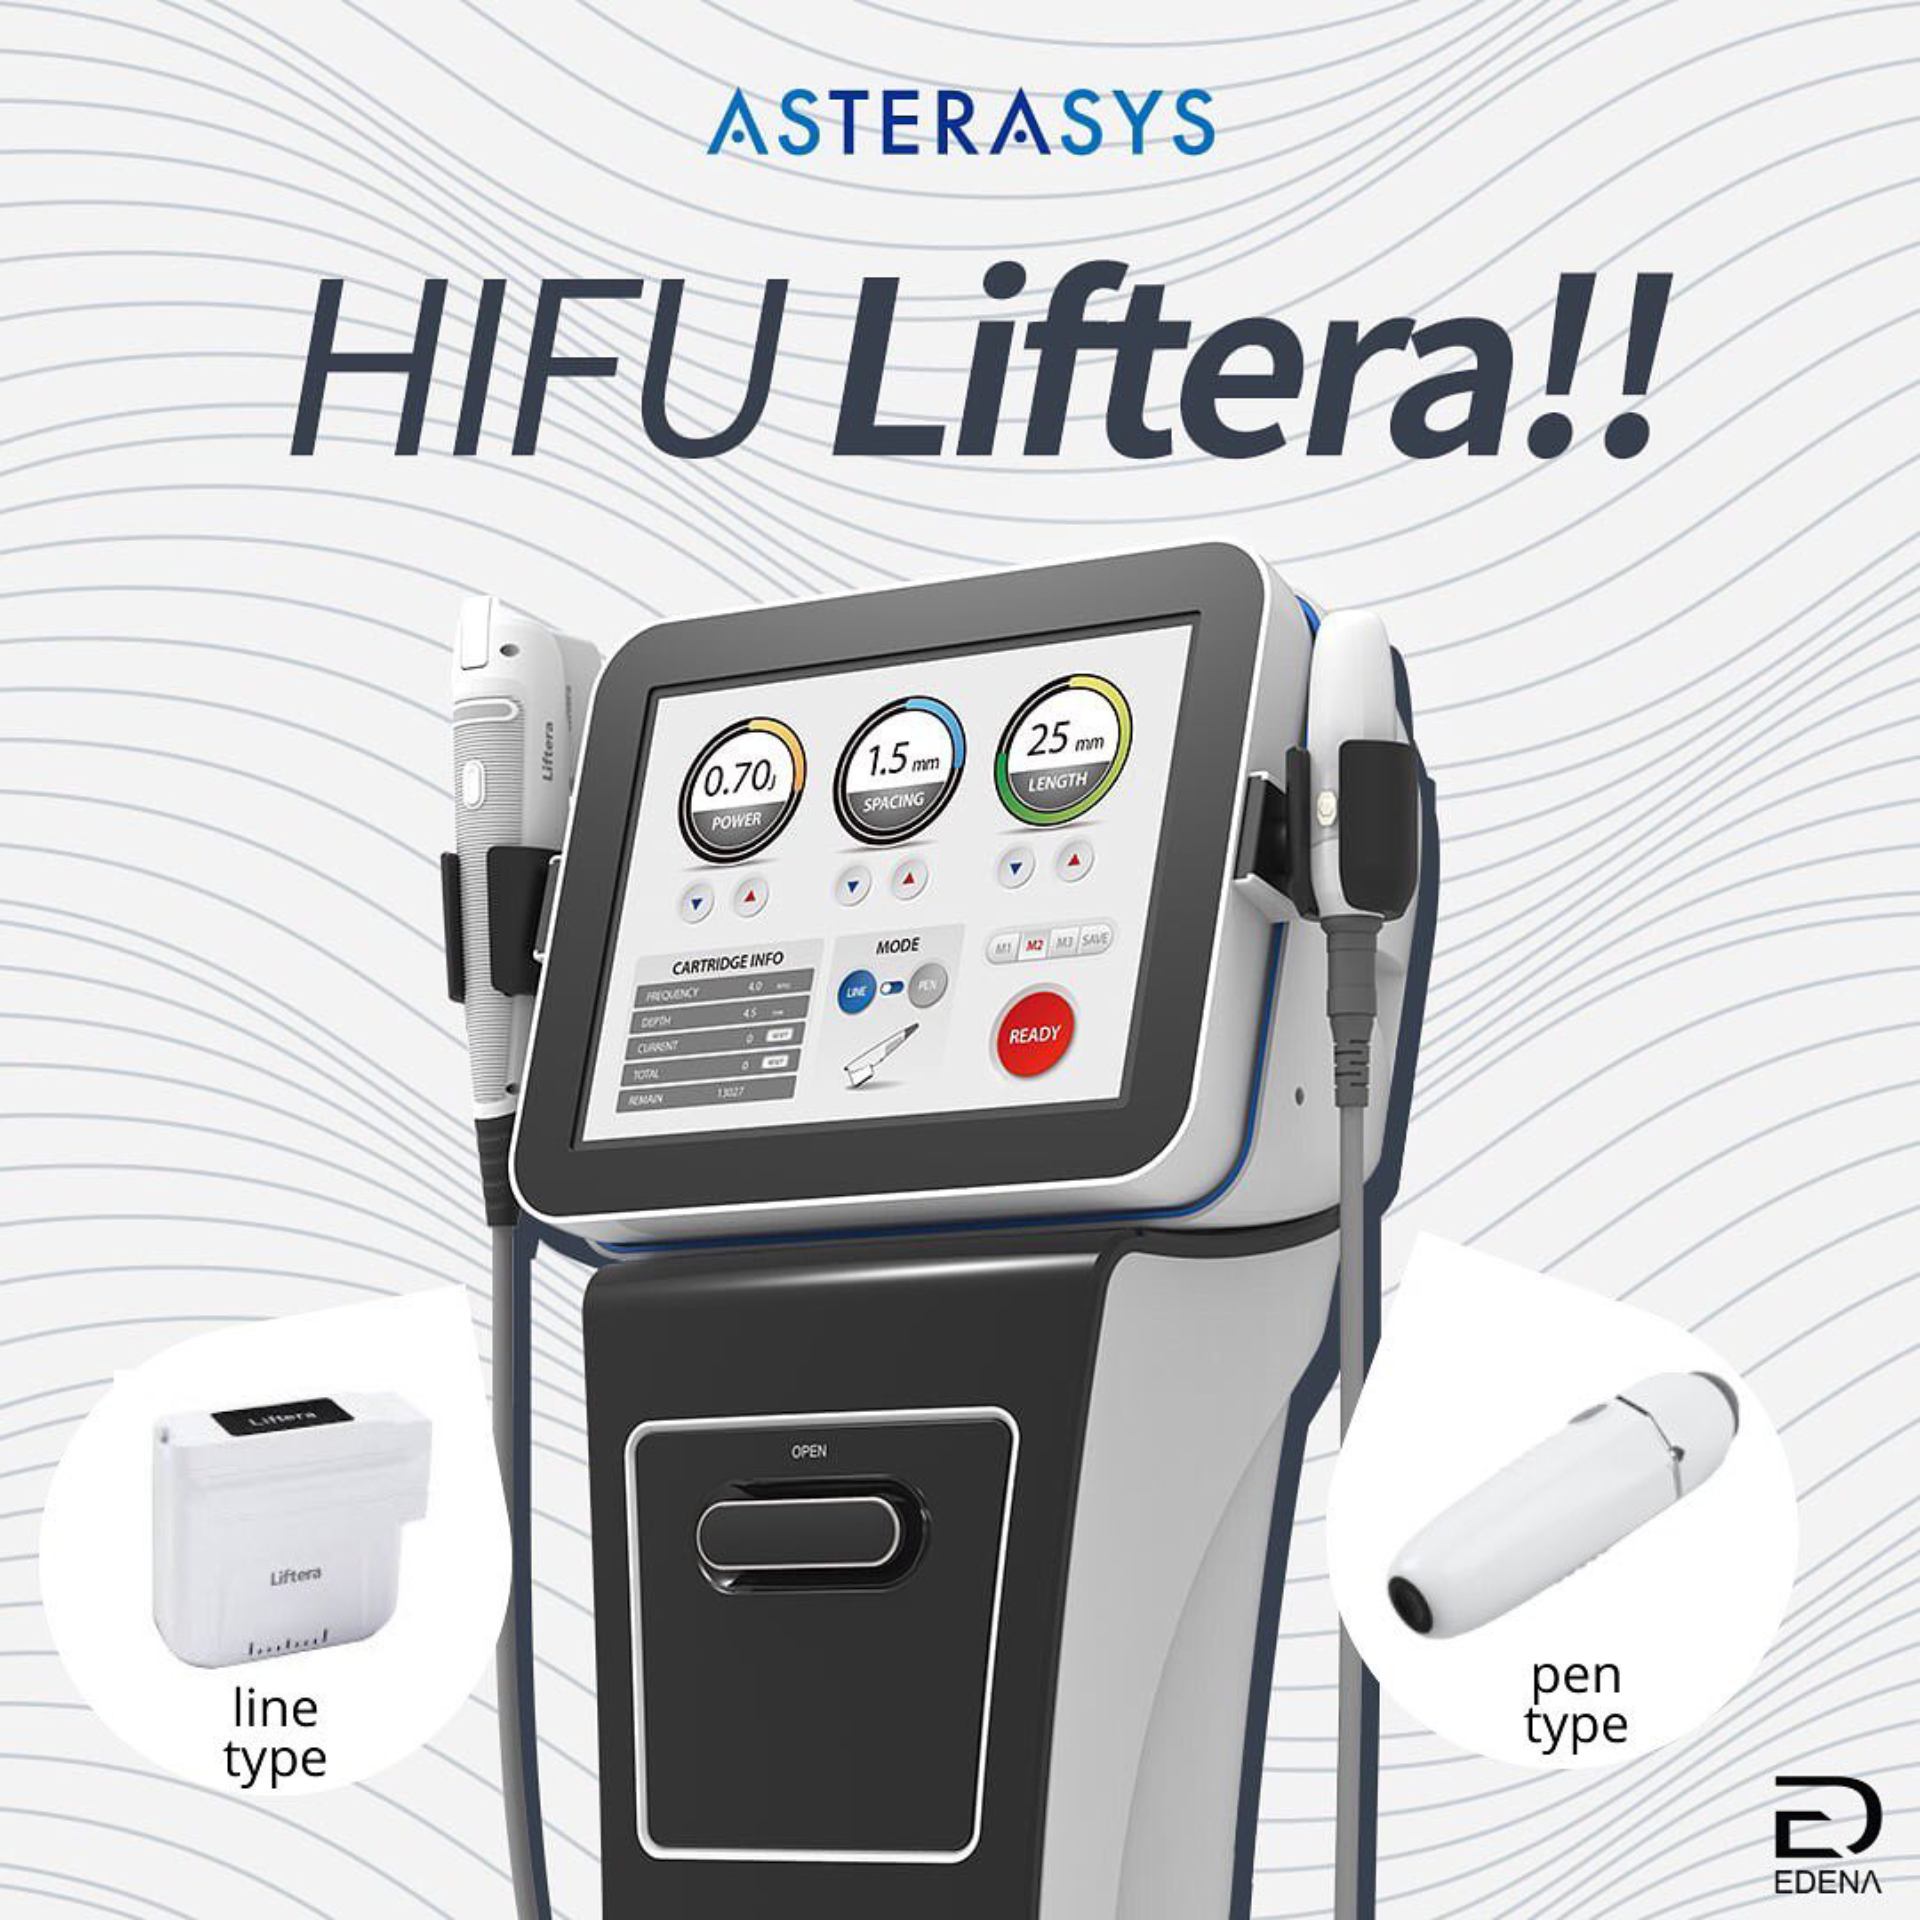 hifu-liftera-device